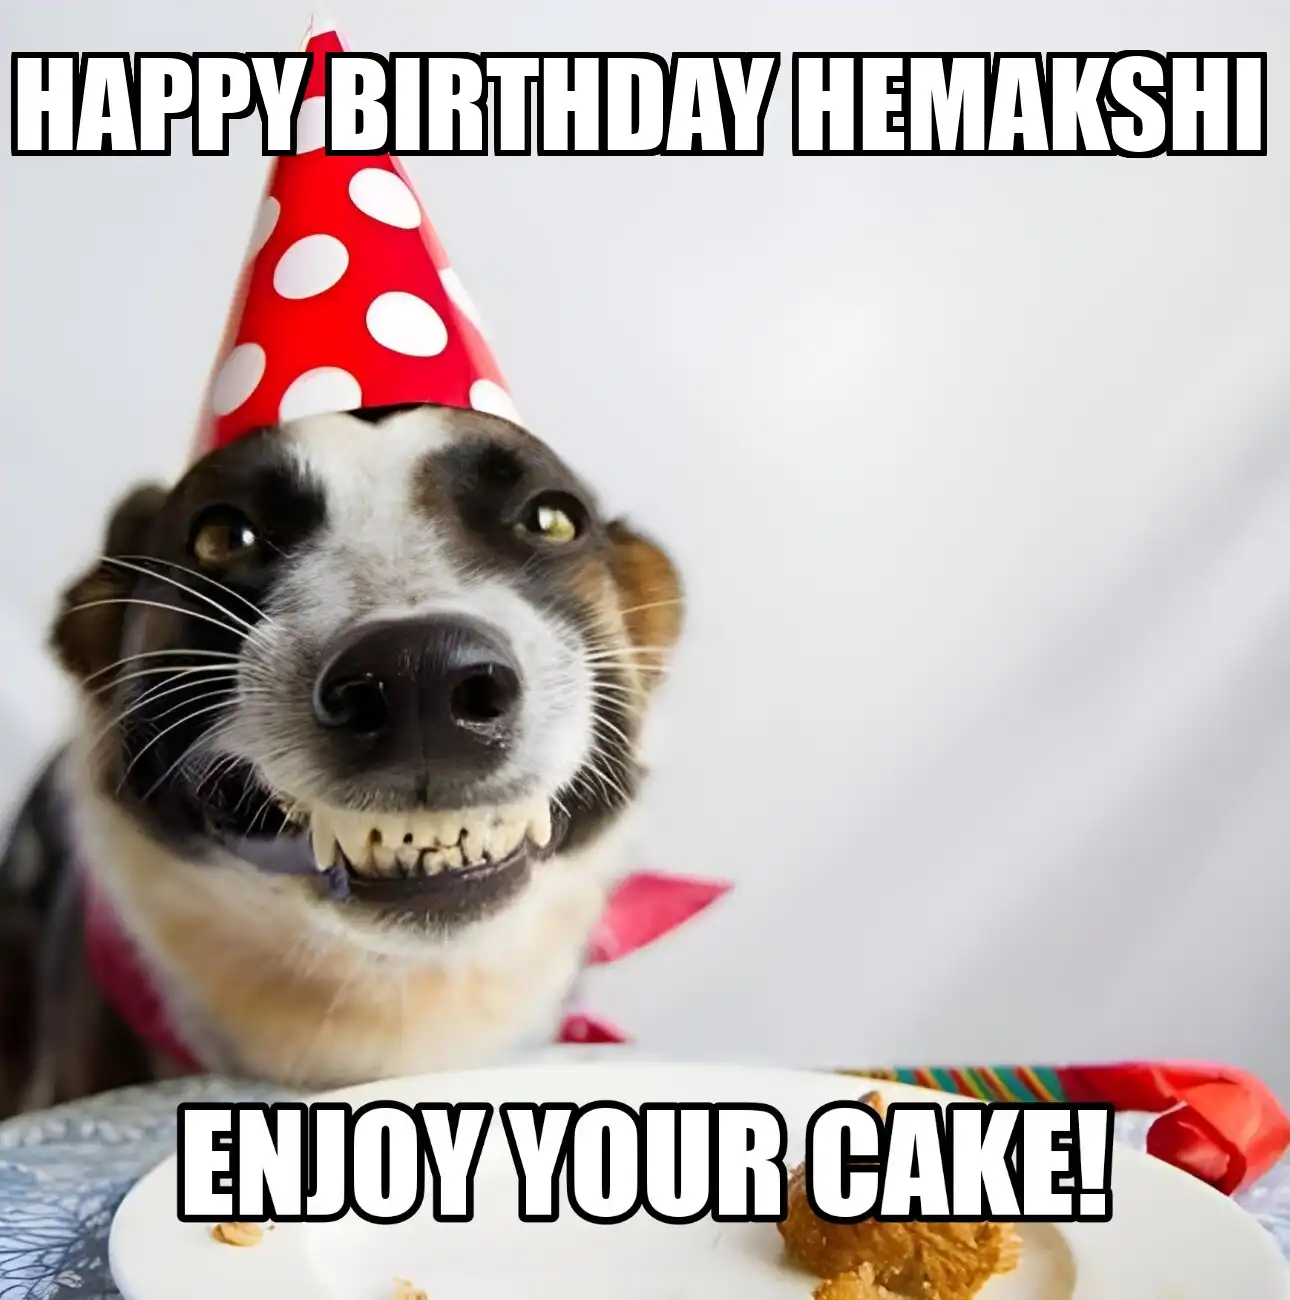 Happy Birthday Hemakshi Enjoy Your Cake Dog Meme